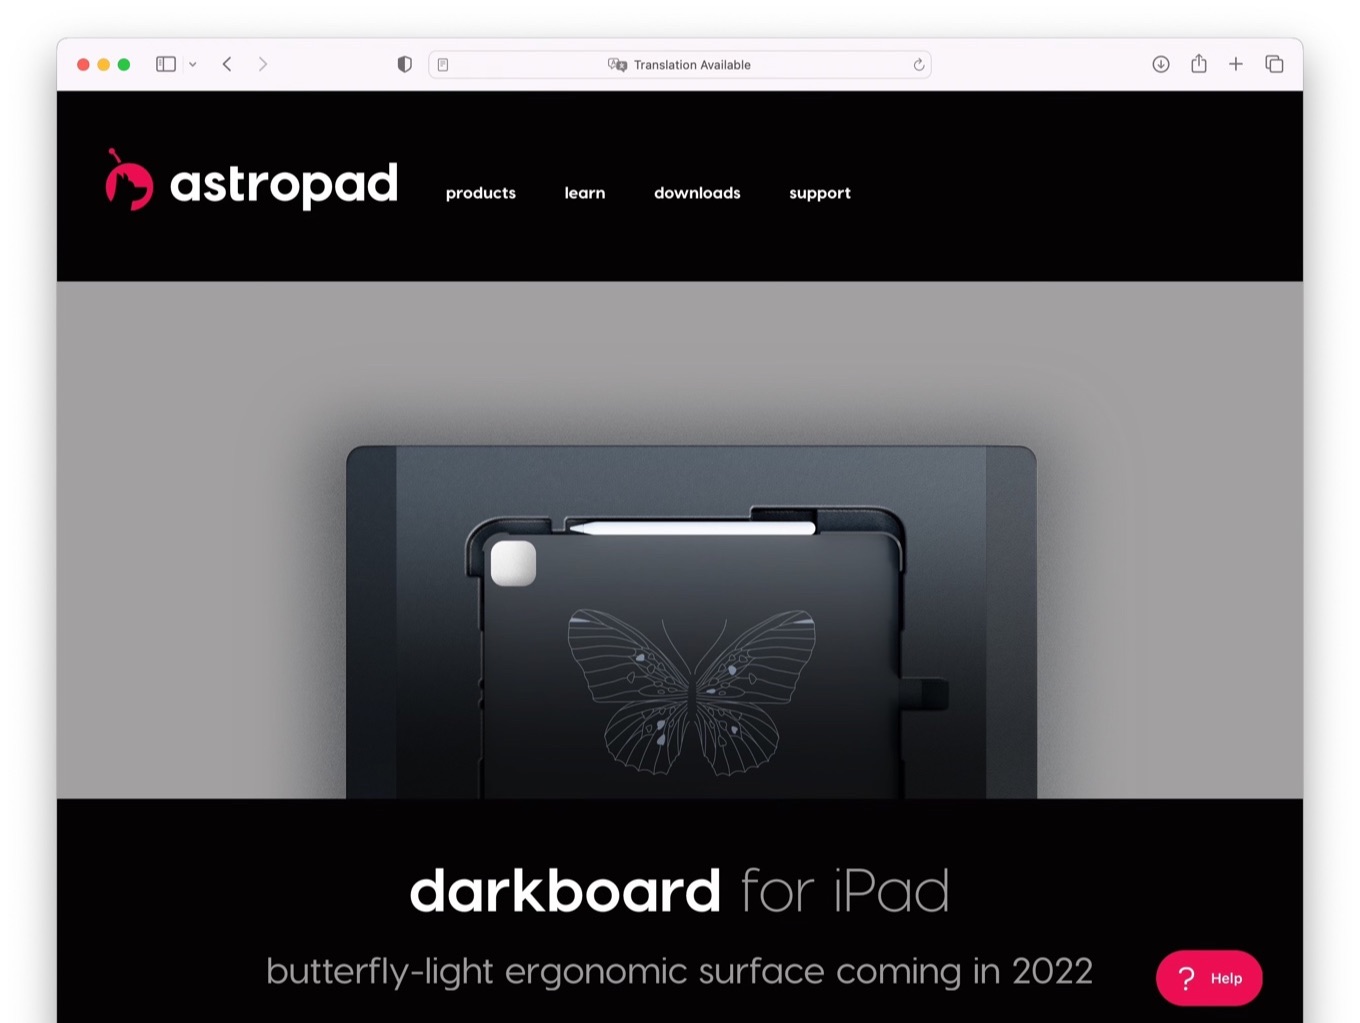 Darkboard for iPad